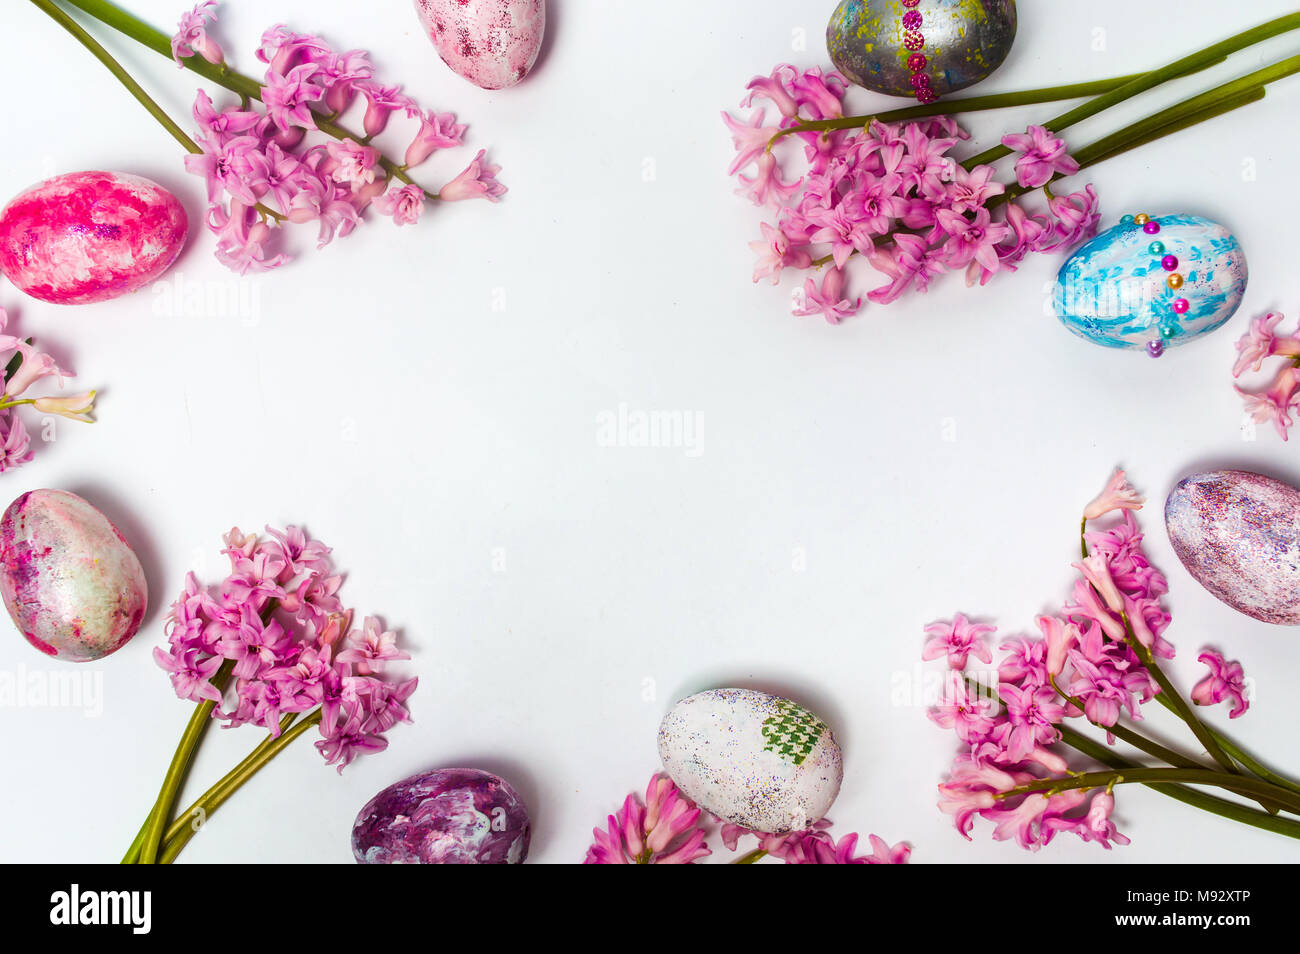 Los huevos de Pascua pintados y Jacinto flores con espacio de copia Foto de stock